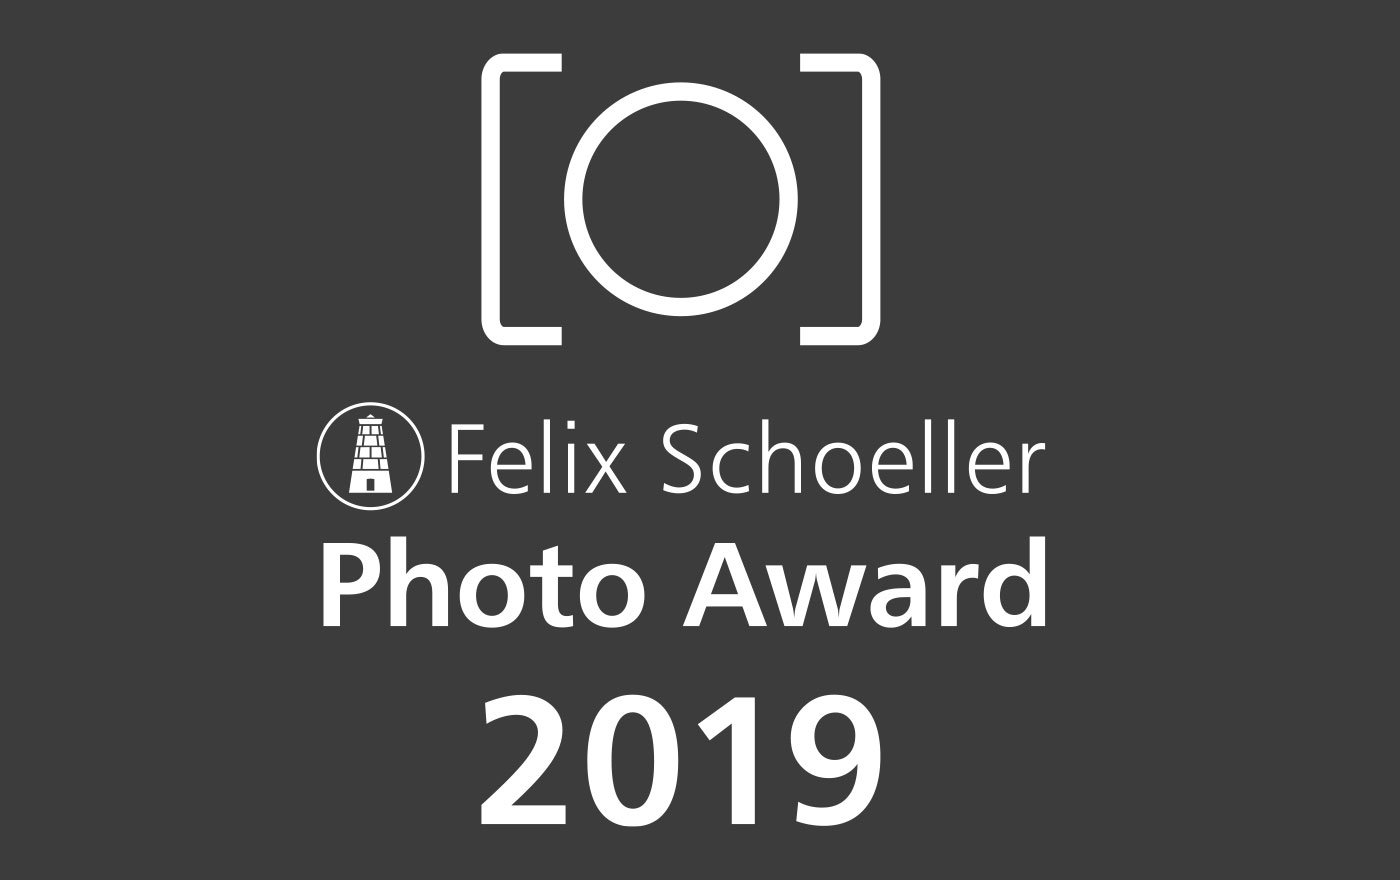 Felix Schoeller Photo Award 2019 ruft auch Modefotografen zum Wettbewerb auf.